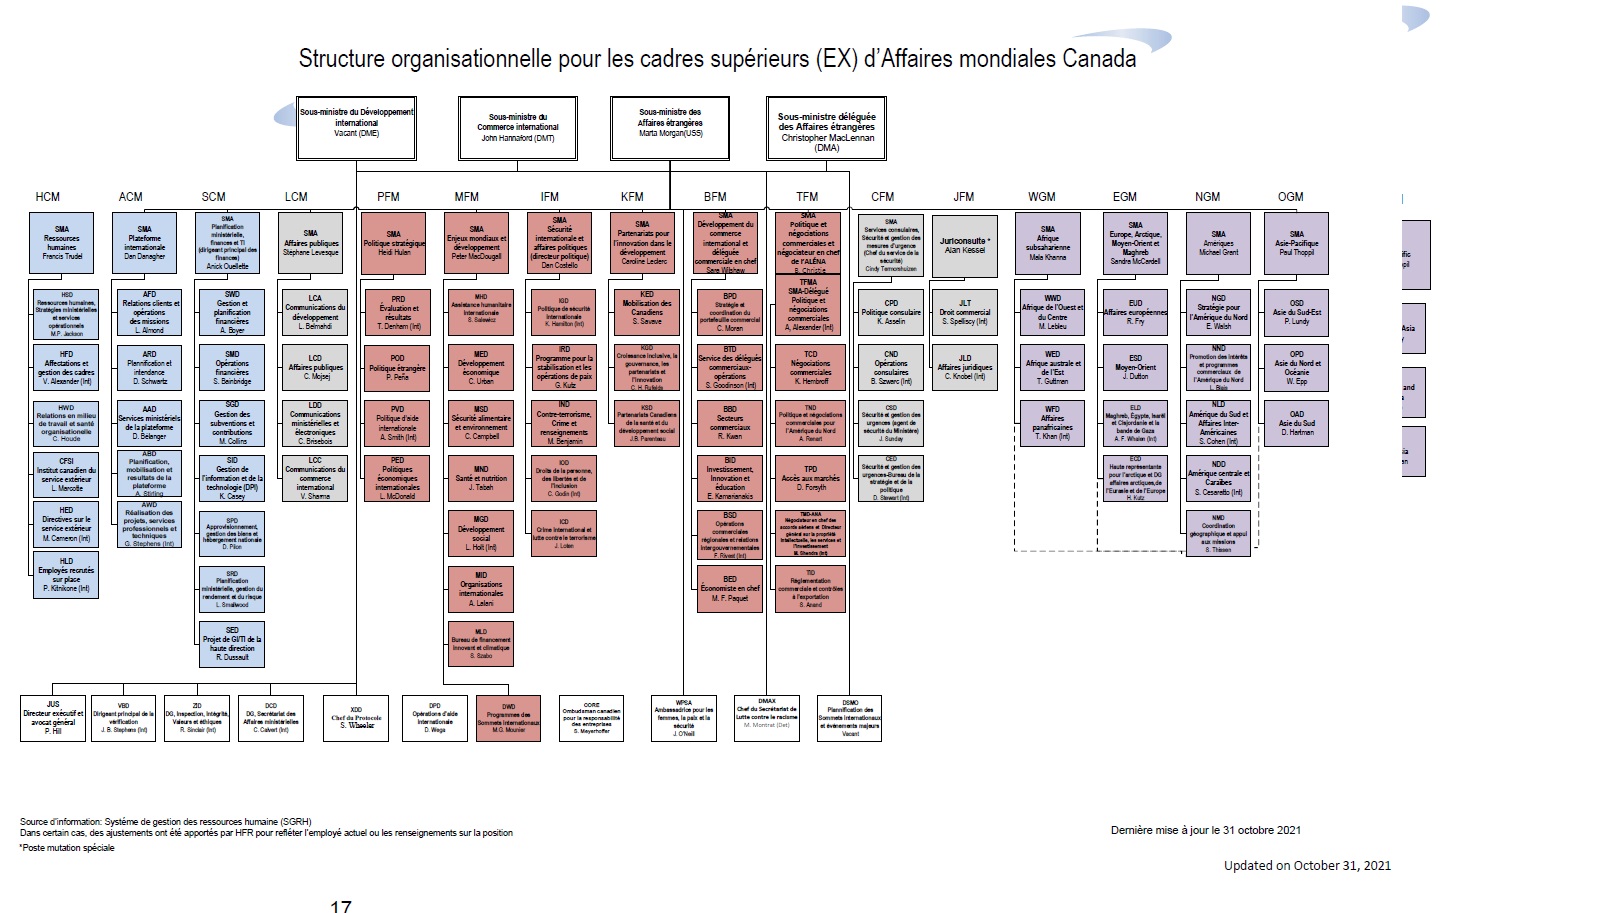 Structure organisationnelle de la direction (EX) d’Affaires mondiales Canada